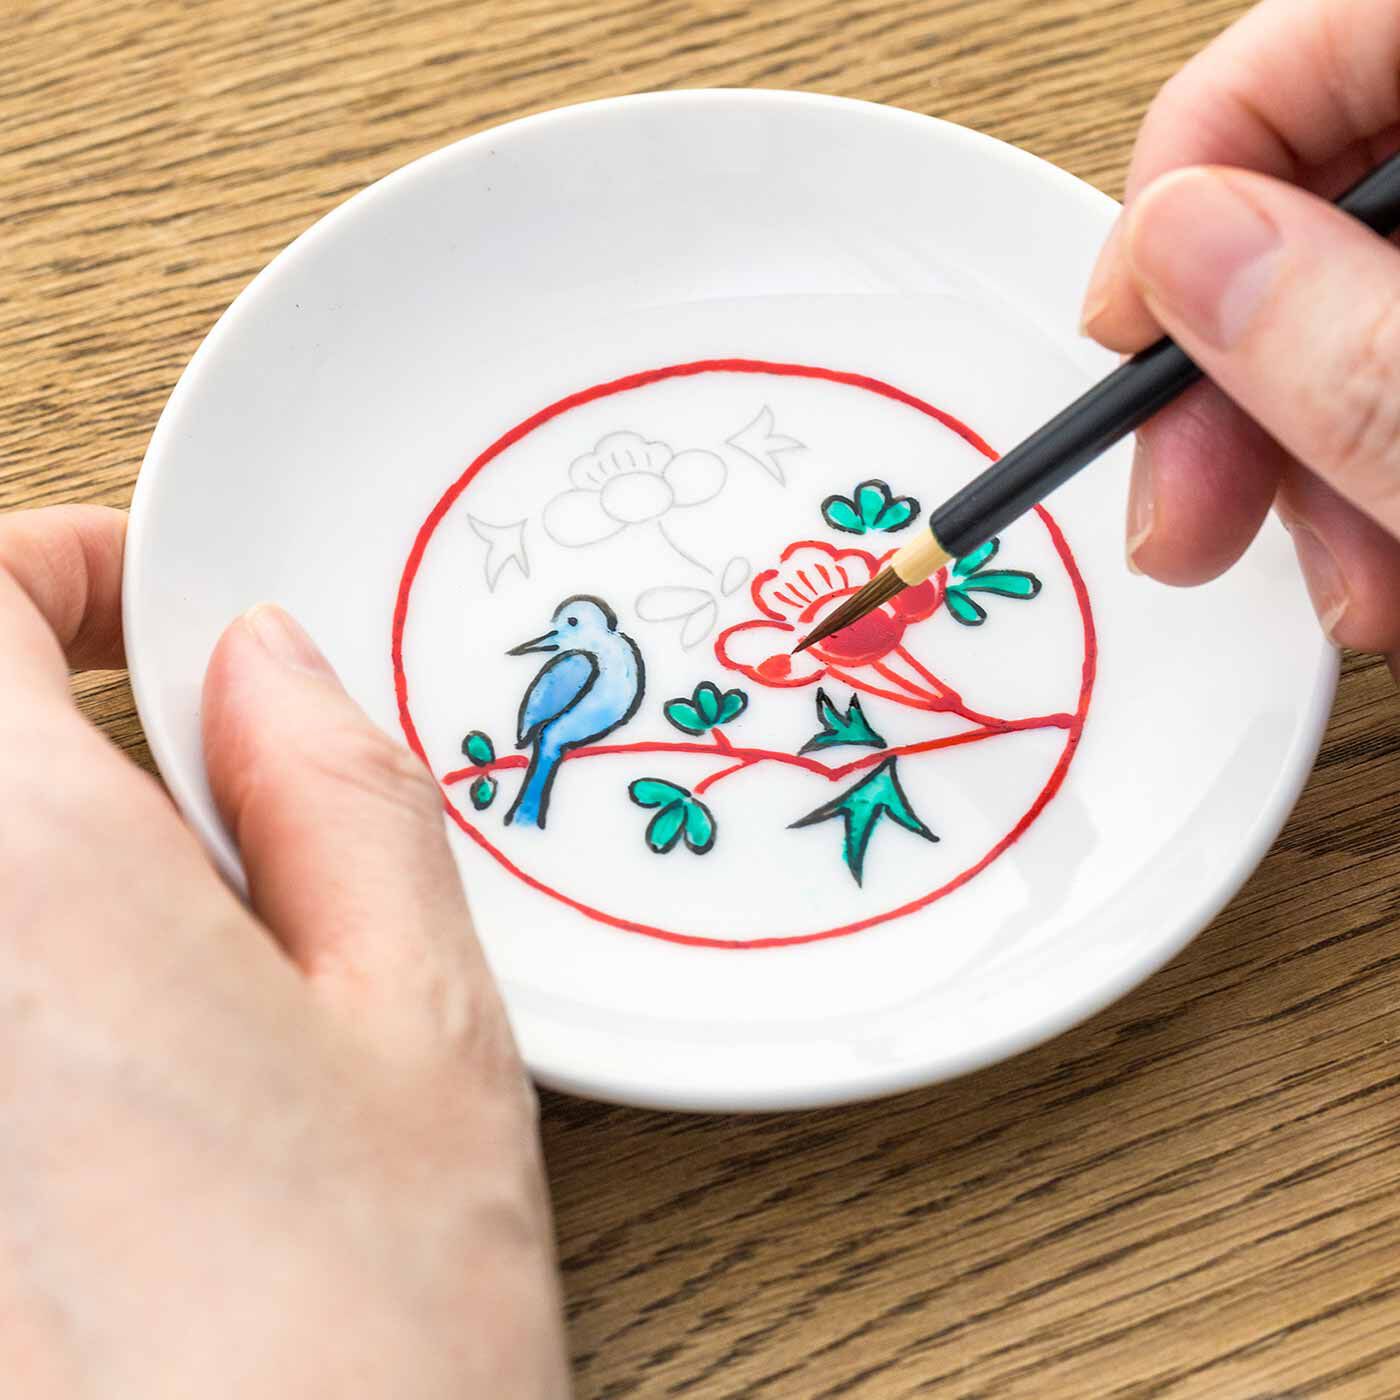 クチュリエ|おうちで絵付け体験 骨董風な絵柄を楽しむ 豆皿・小皿の会|How to make お皿に絵付けをします。